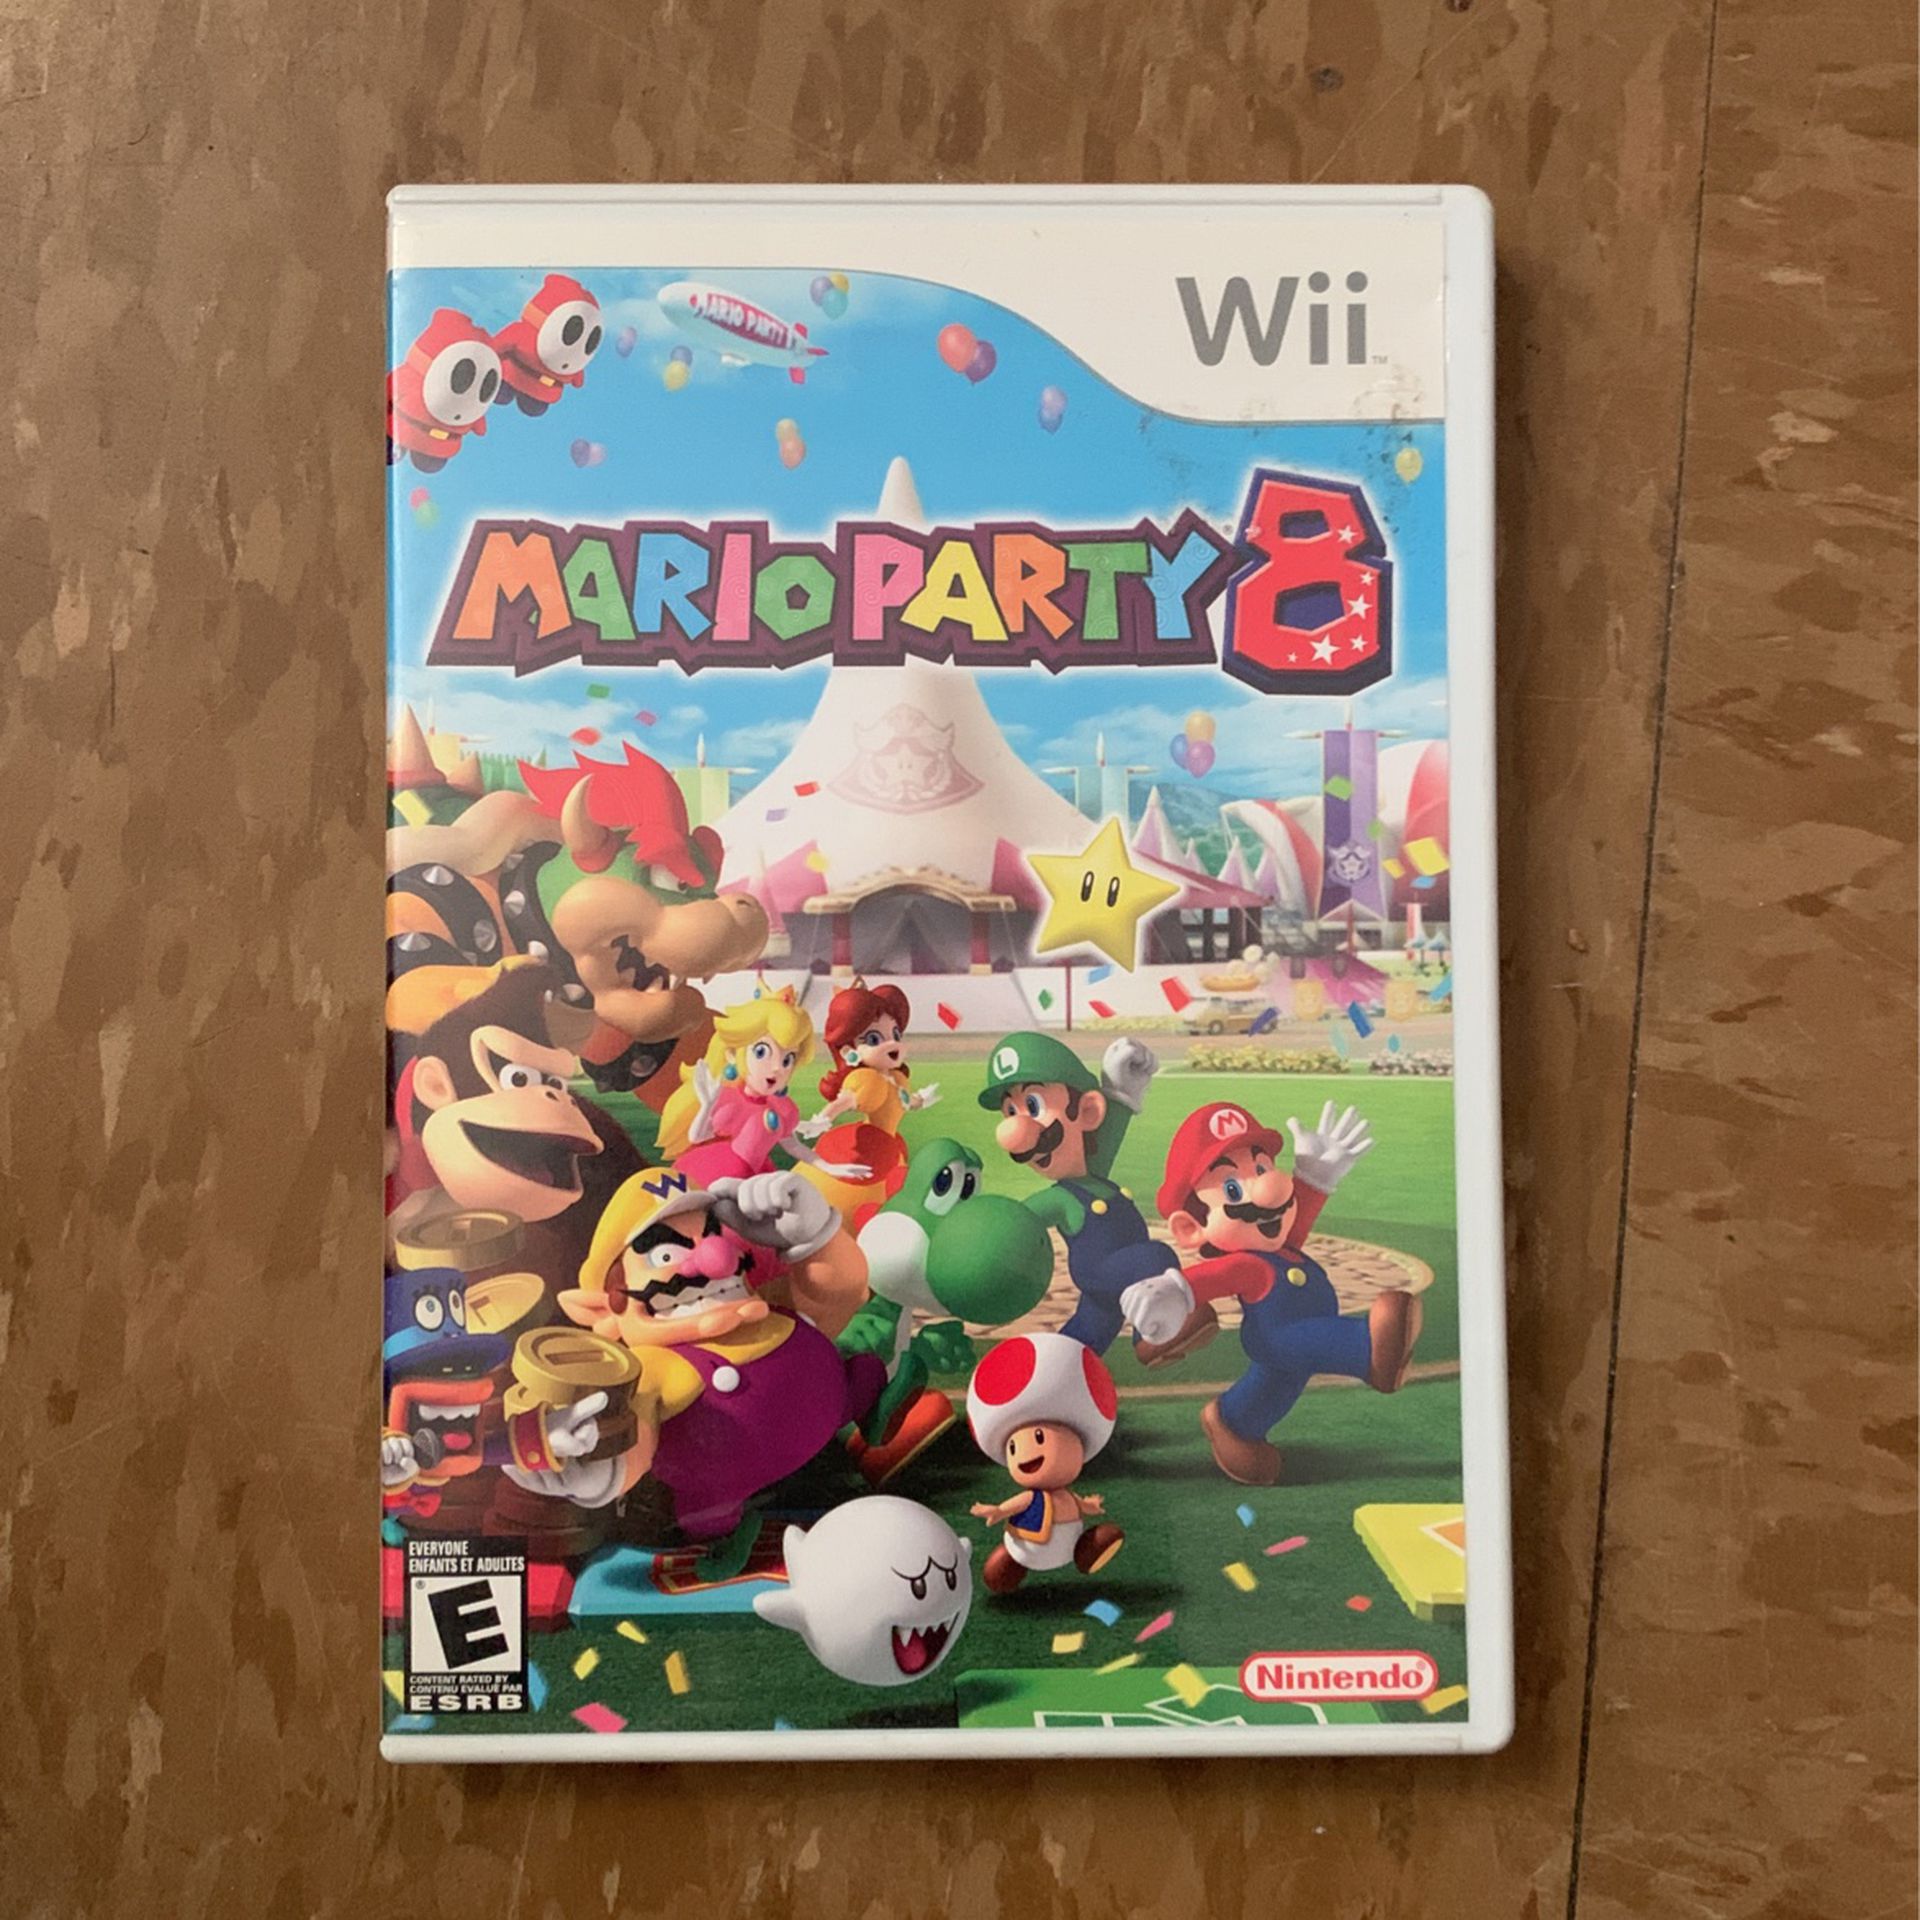 Nintendo Wii Mario Party 8 